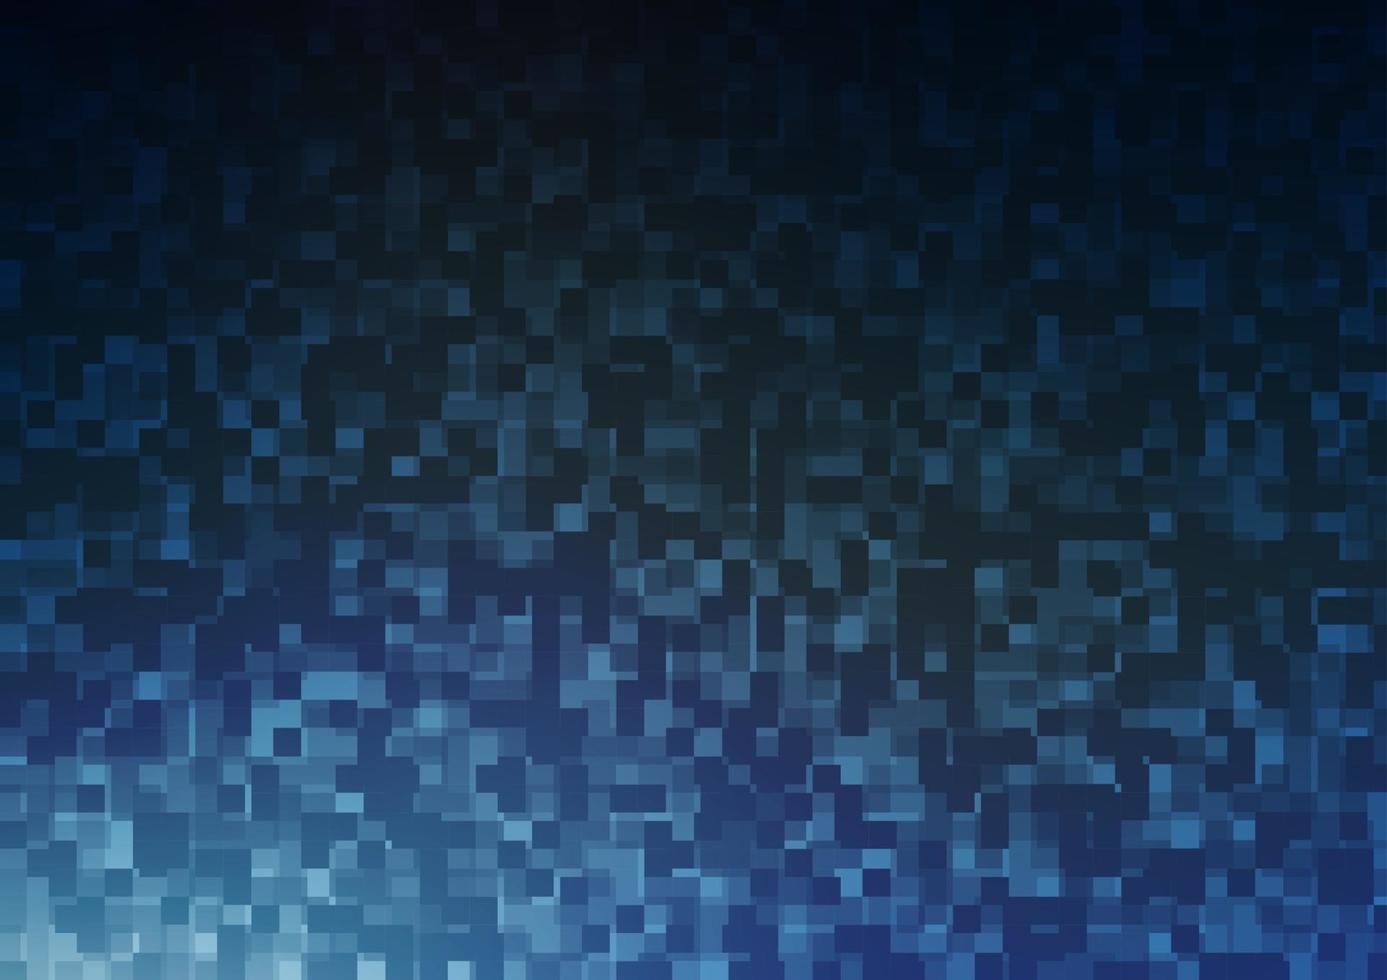 plantilla de vector azul claro con cristales, rectángulos.